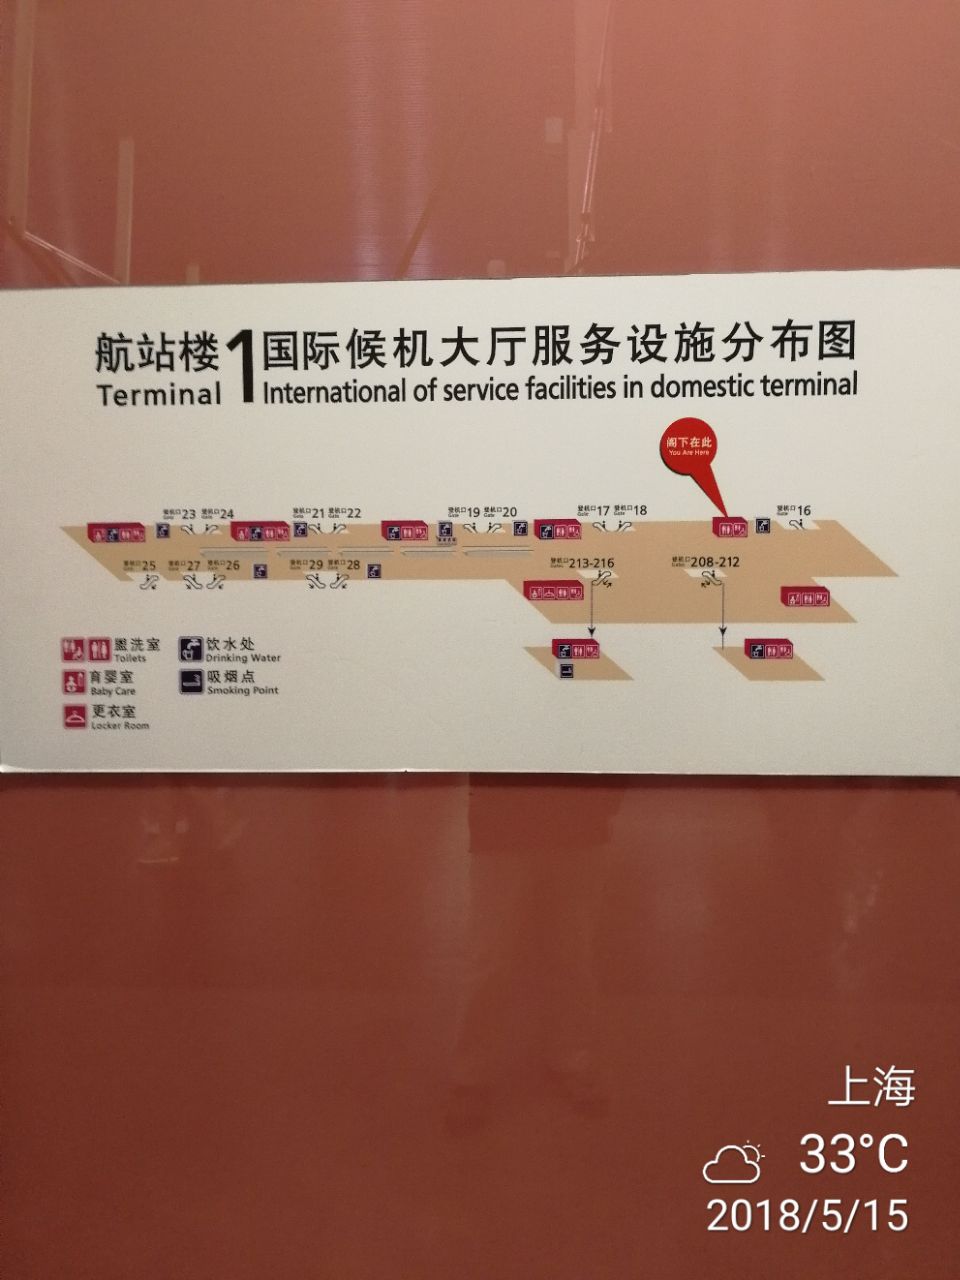 日上免税行(上海浦东国际机场t1航站楼店)